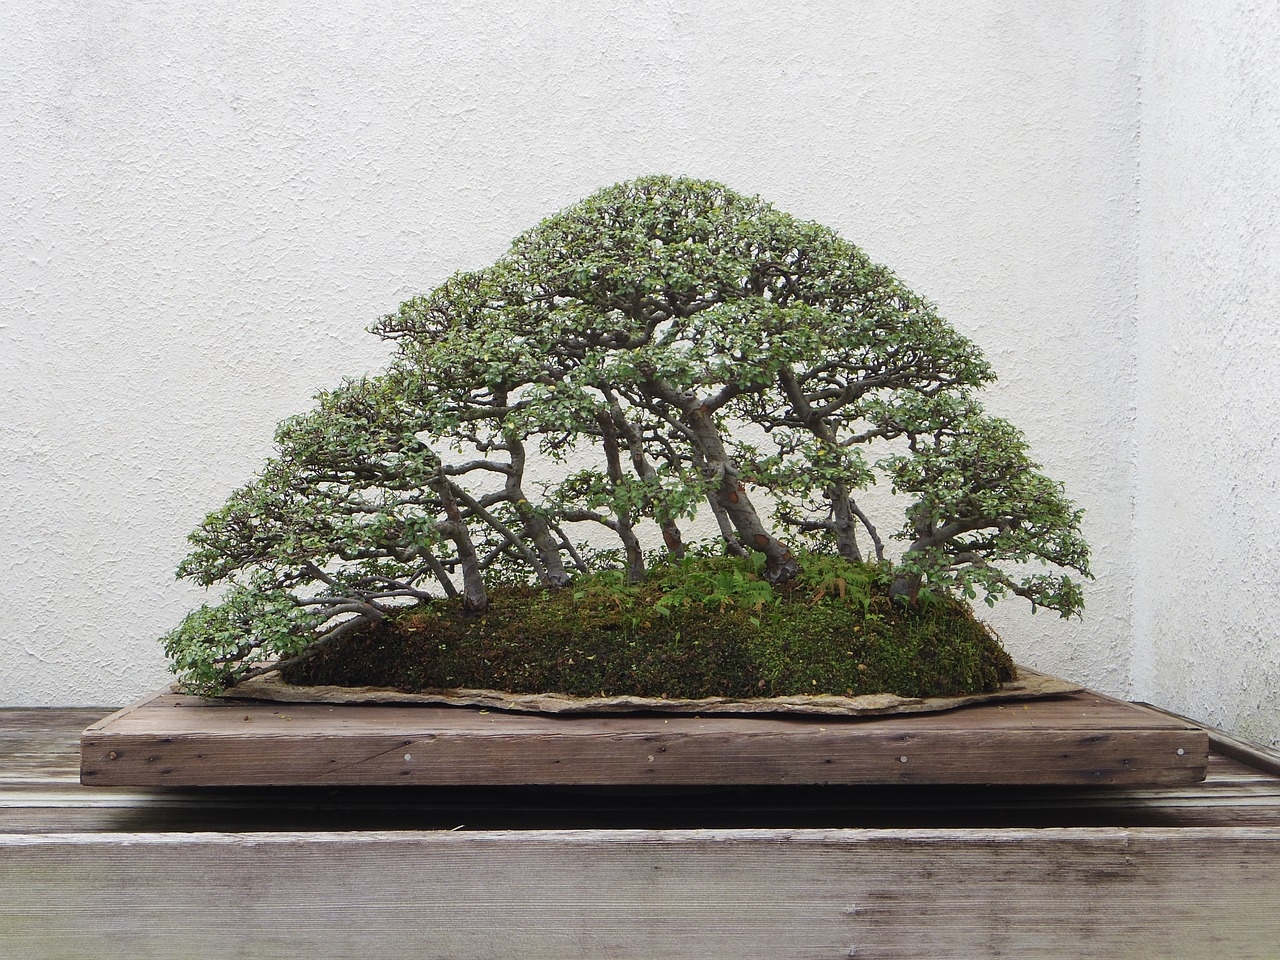 zwykłą ziemia do bonsai